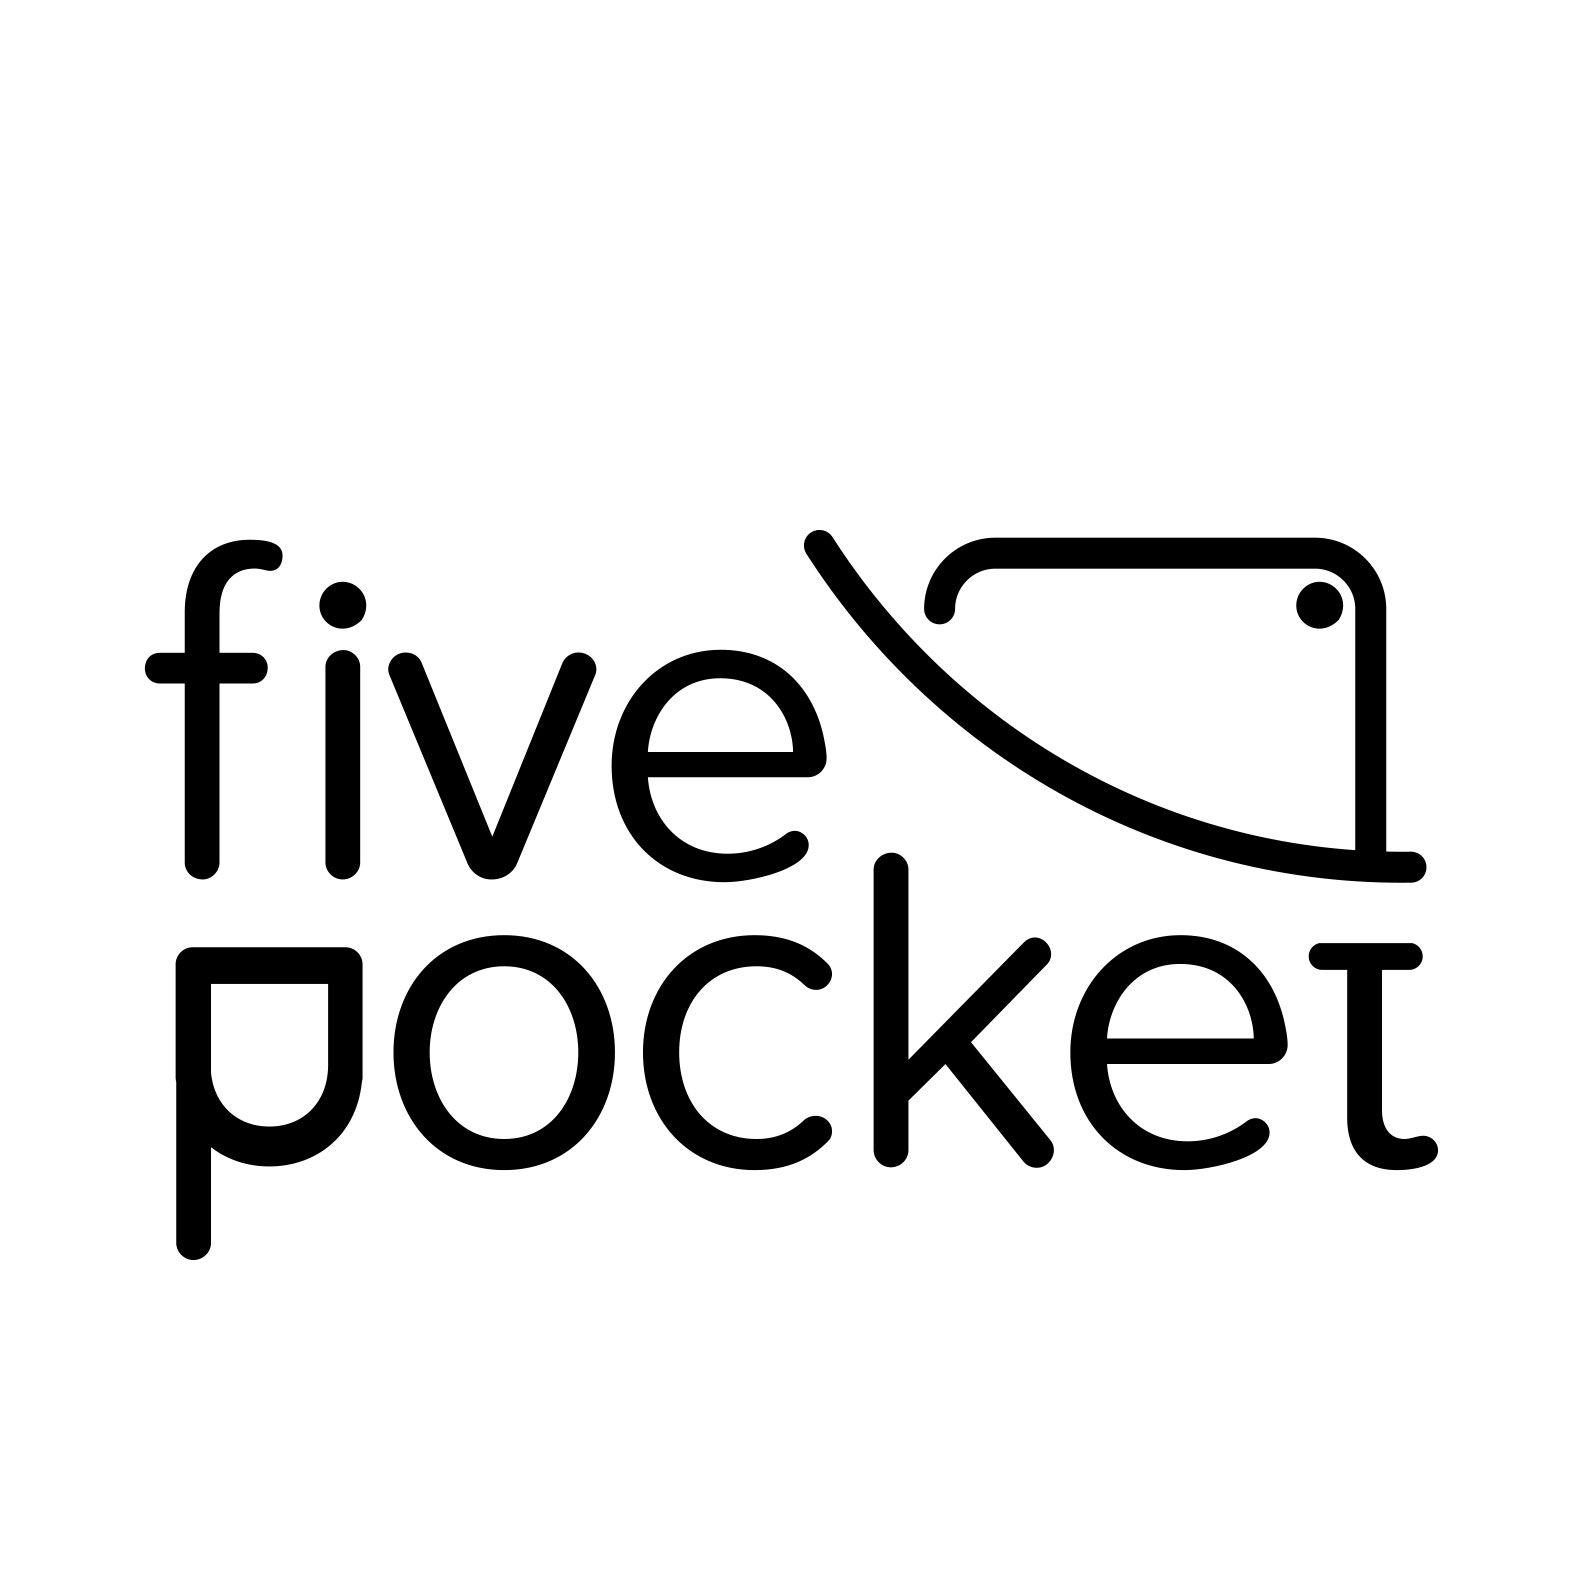 Pocket Logo - Pocket Logos